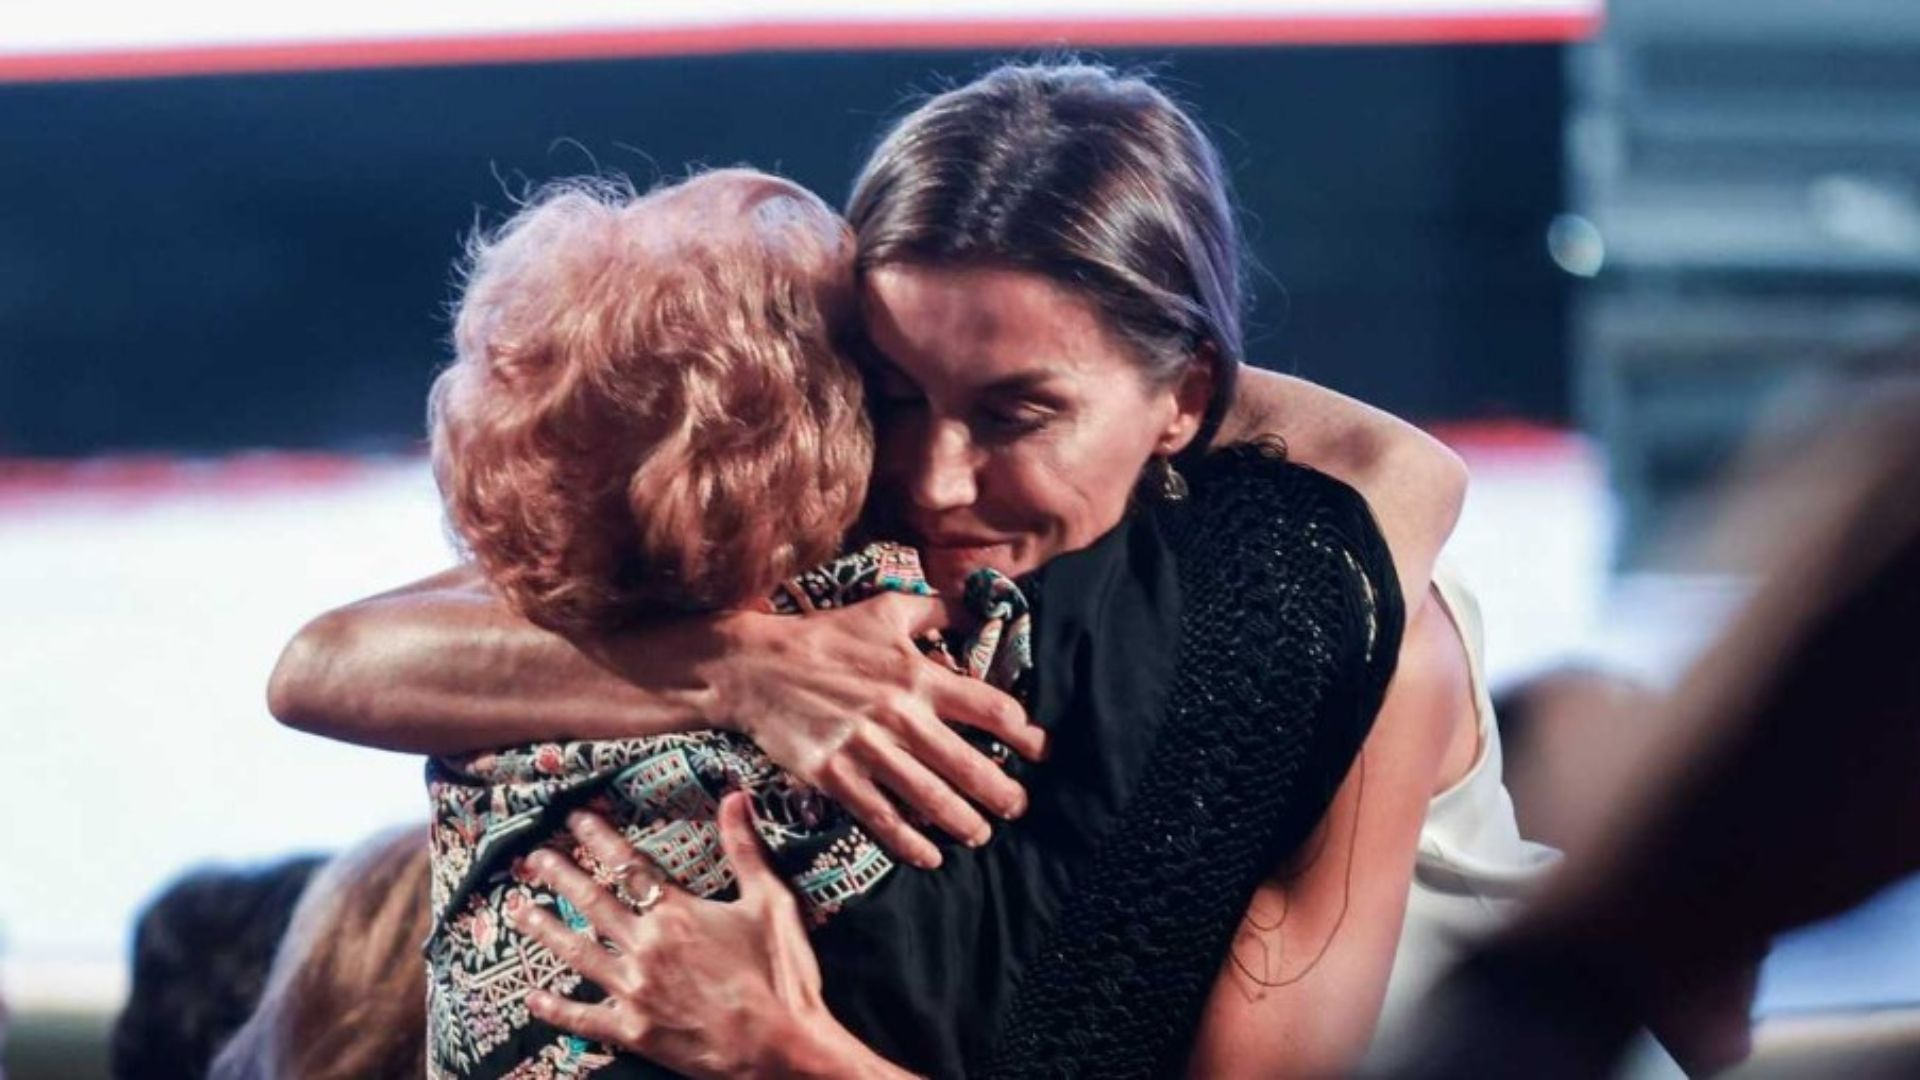 Maruja García, la anciana de 91 años que pidió un abrazo a la Reina Letizia, explica por qué lo hizo